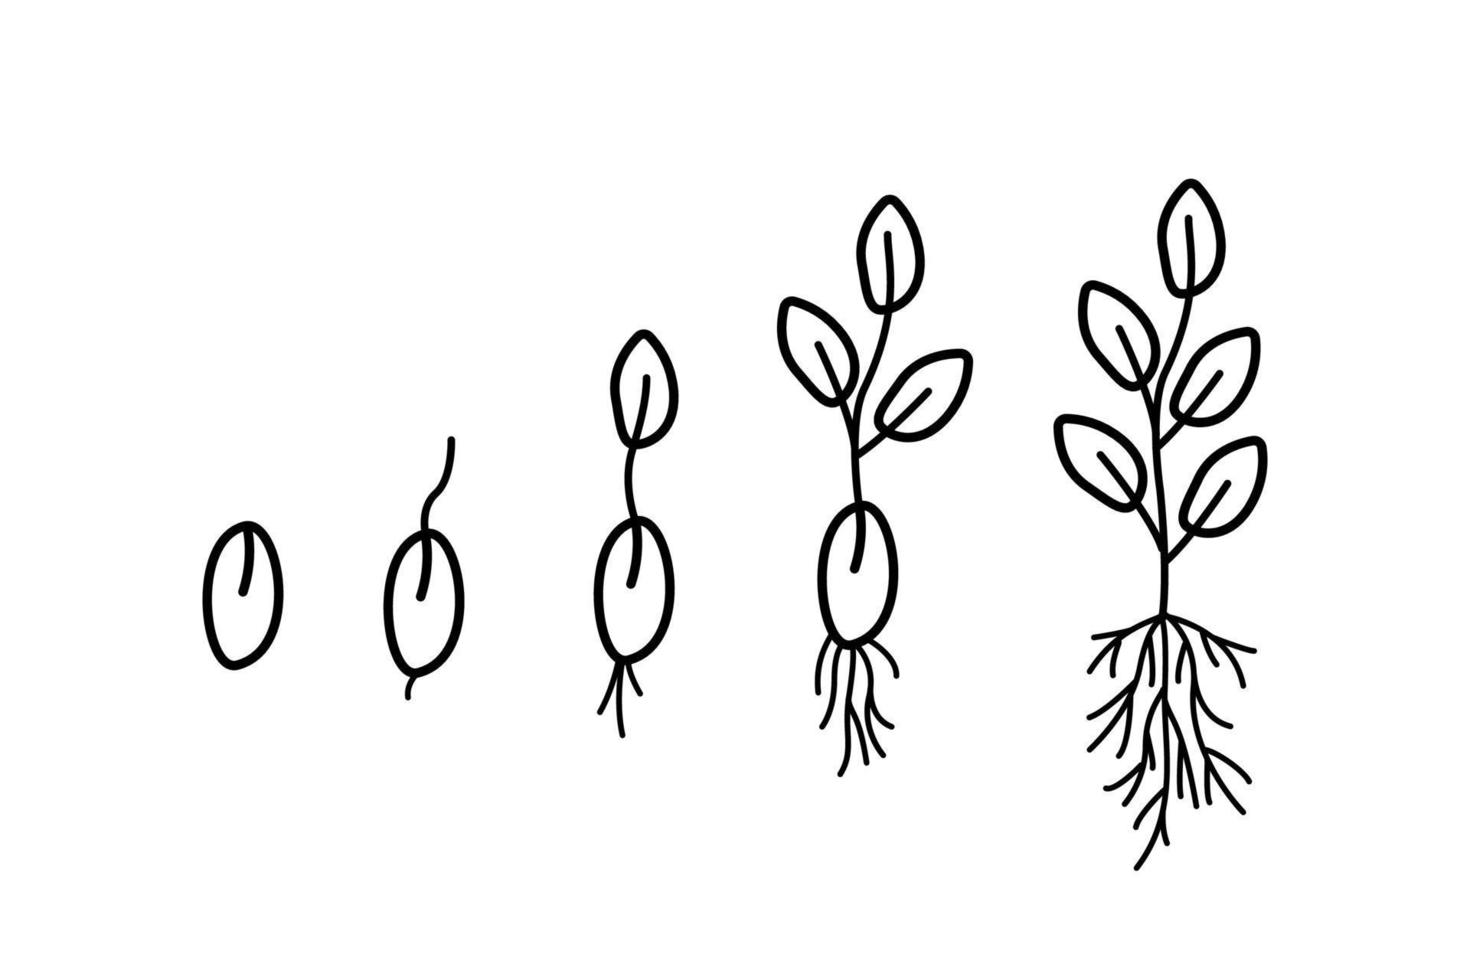 fasi di germinazione dei semi, illustrazione vettoriale di piantine da giardinaggio, stile doodle.